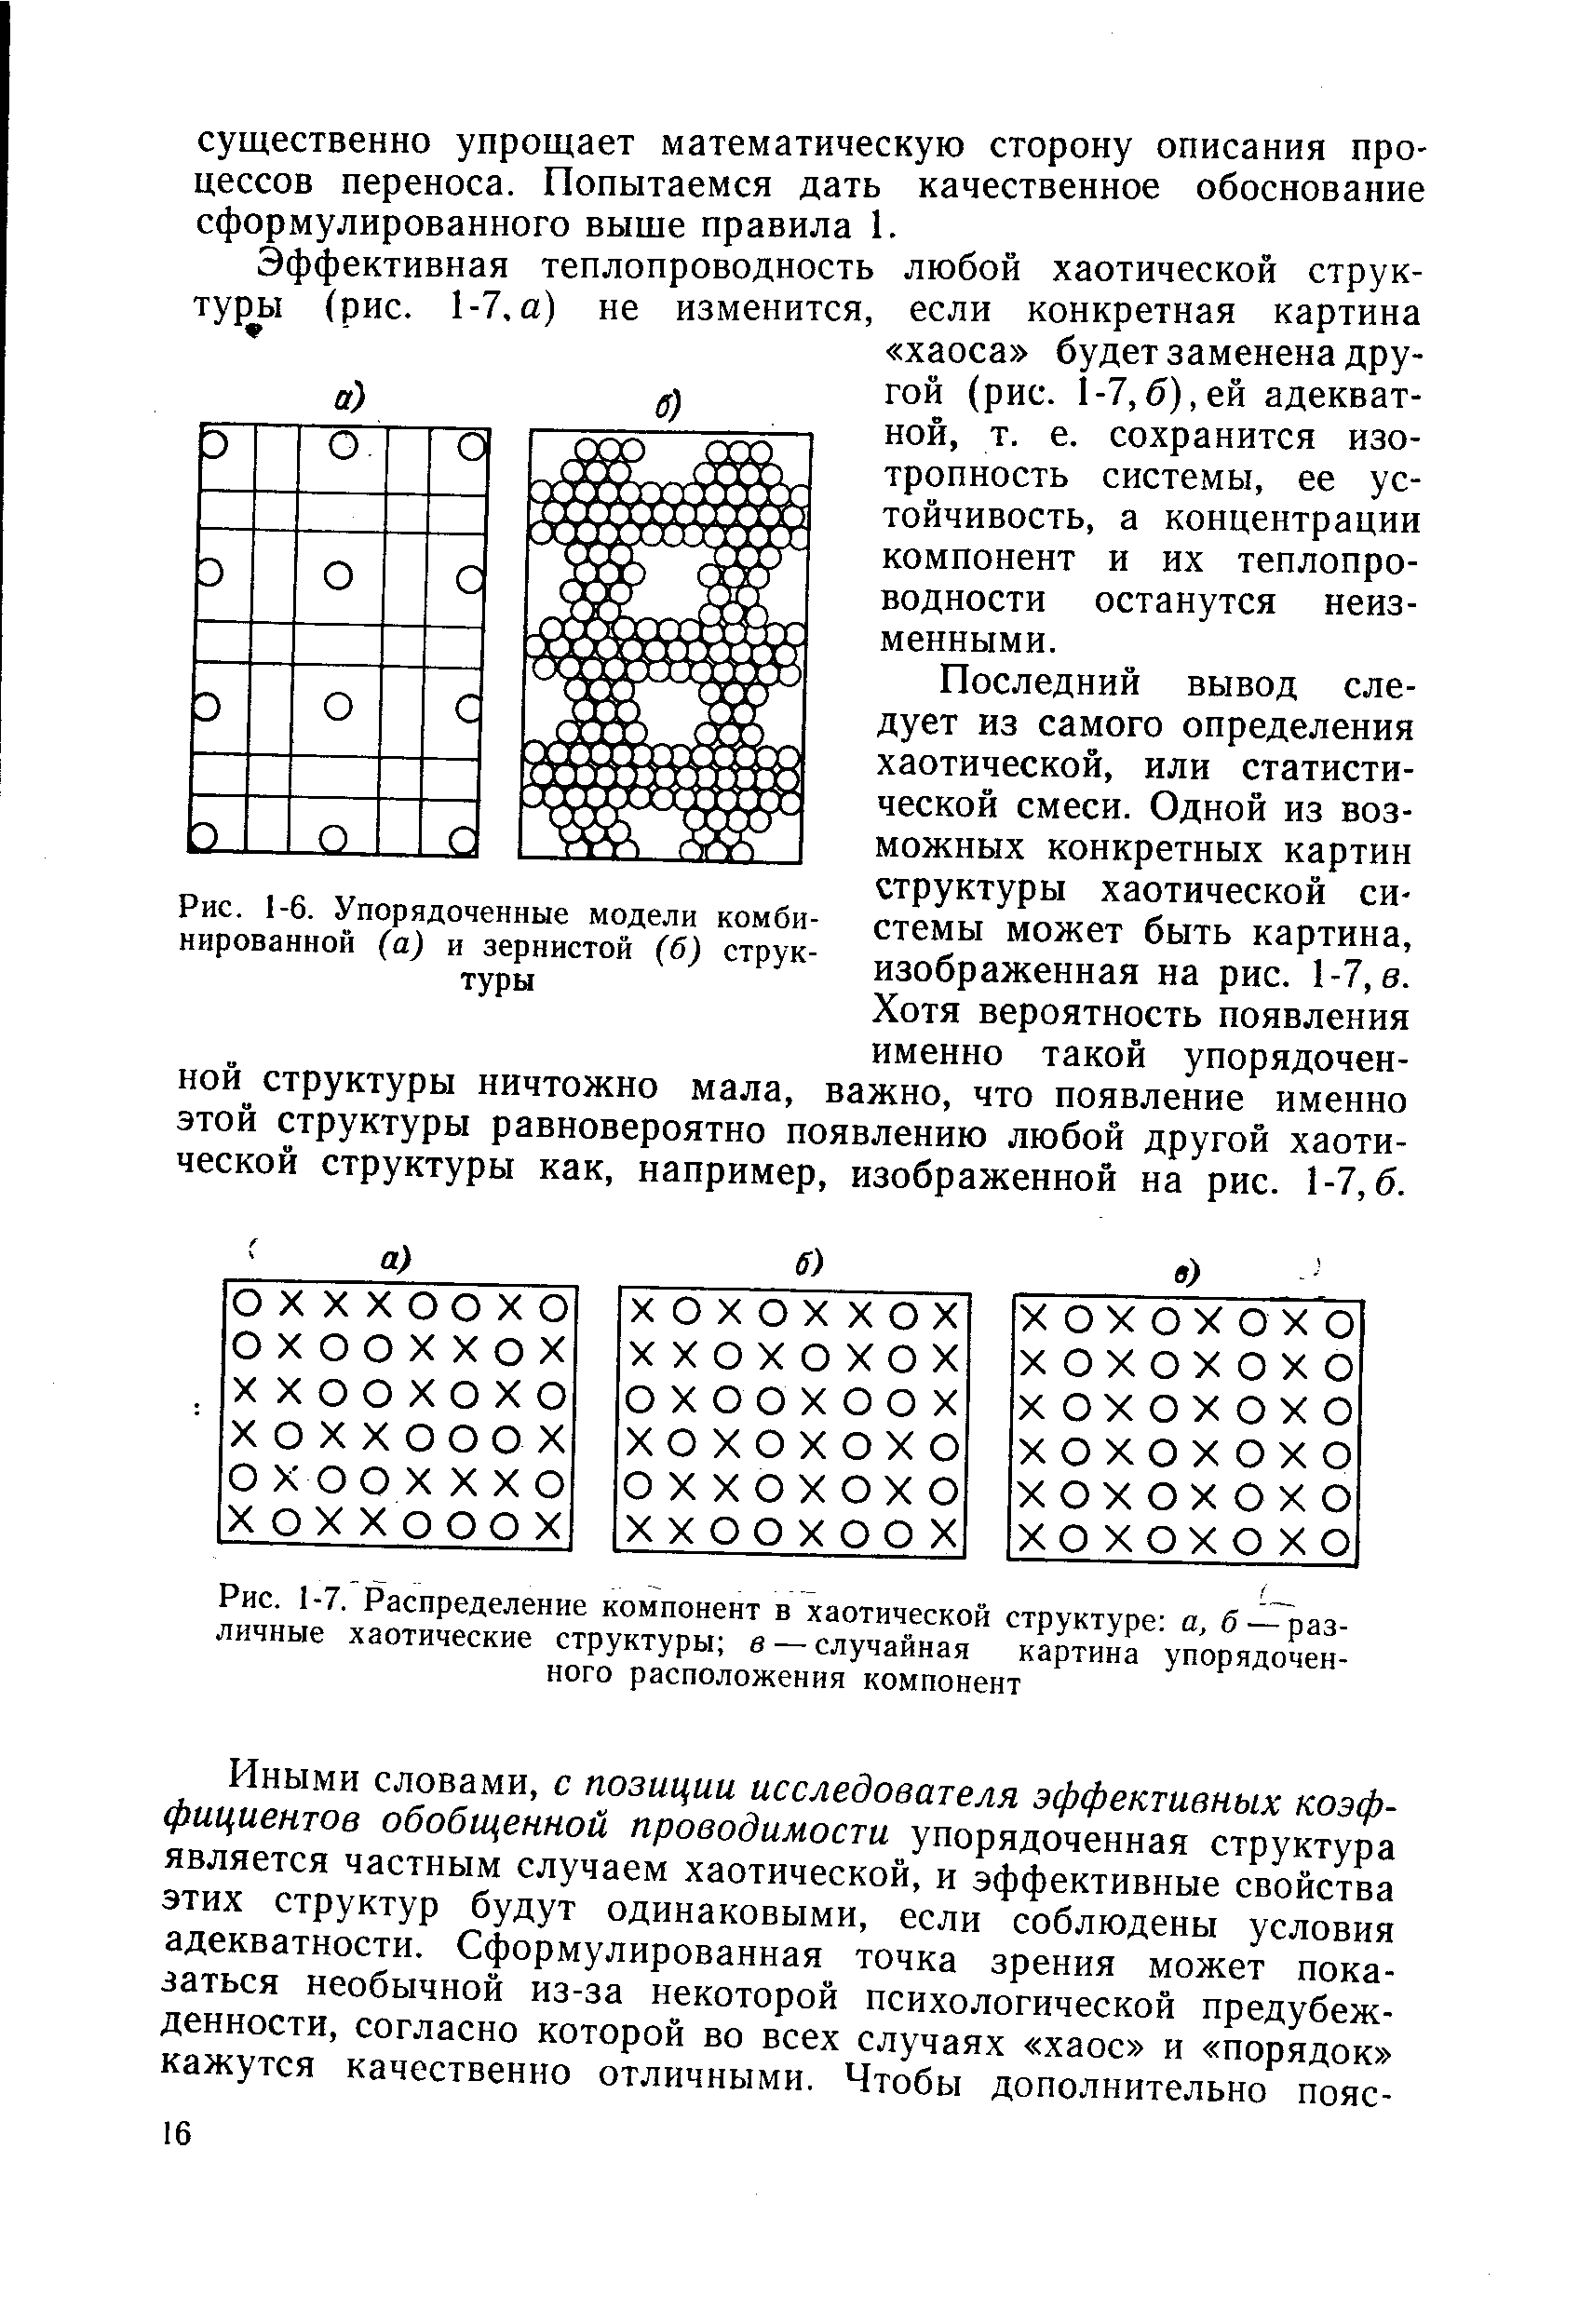 Рис. 1-6. Упорядоченные модели комбинированной (а) я зернистой (б) структуры
